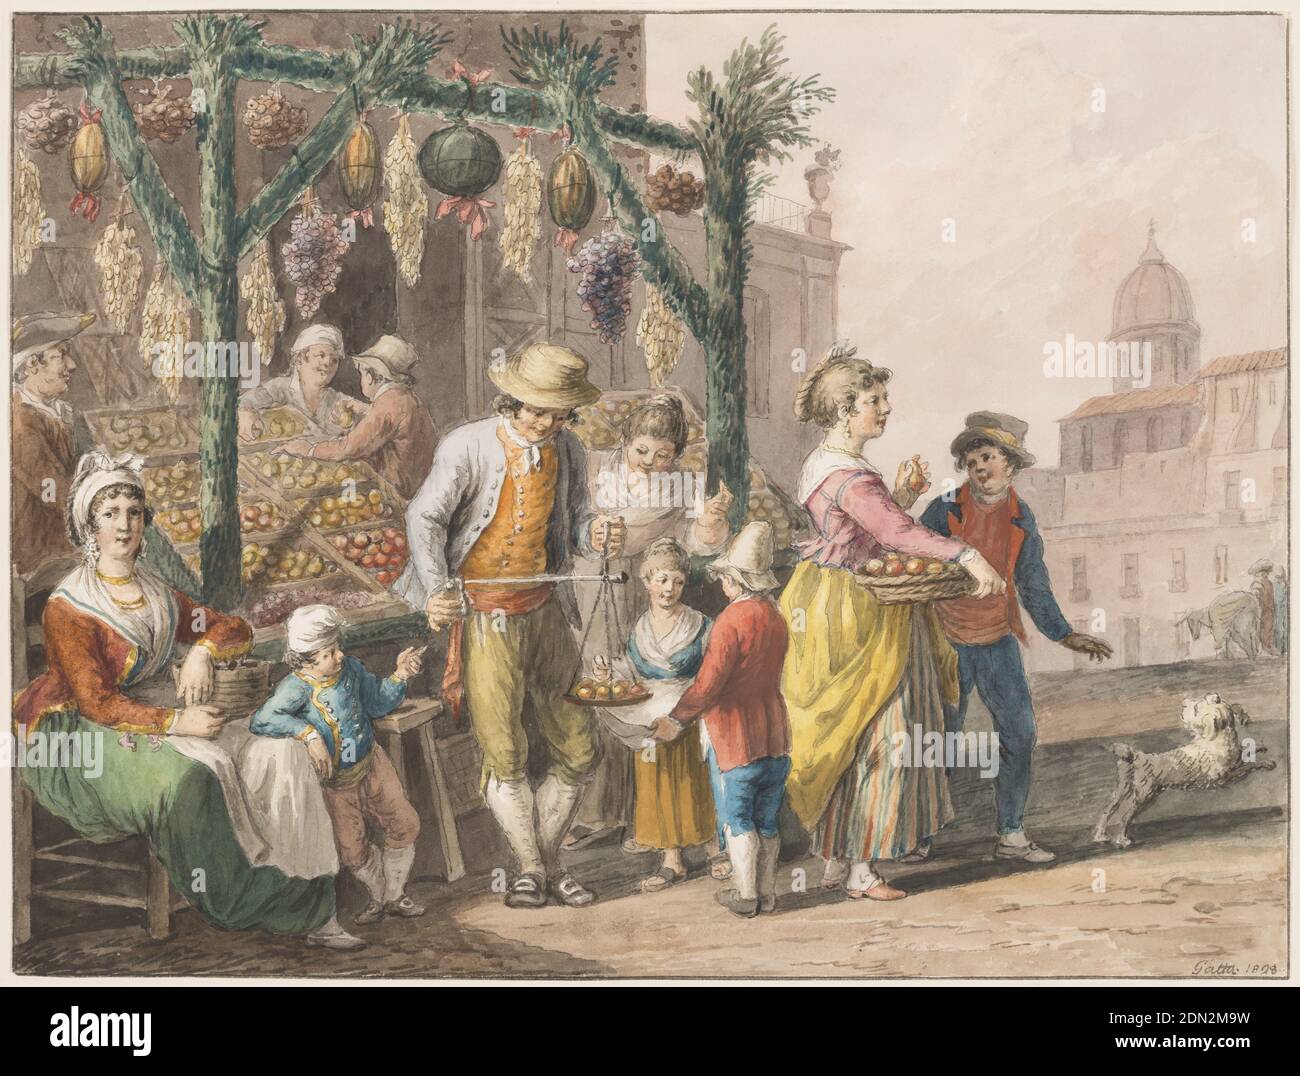 Aquarell; EIN Obststand in Neapel zu Weihnachten, Saverio della Gatta, italienisch, 1777 - 1829, schwarze Kreide und verschiedene Wasserfarben auf Papier., Horizontales Rechteck. Die Obstkisten sind links außerhalb eines Hauses auf einem Platz ausgestellt. Ein Gerüst wird auf Pfosten errichtet, die mit Blättern bedeckt sind. Zwei Männer bedienen die Kunden. Eine Frau sitzt auf einem Stuhl in der linken Ecke, ein Junge steht neben ihr. Ein Mädchen und ein Junge mit Hund verlassen den Laden rechts. Rahmenlinien. Signatur: 'Gatta 1828.', Italien, 1828, Figuren, Zeichnung Stockfoto